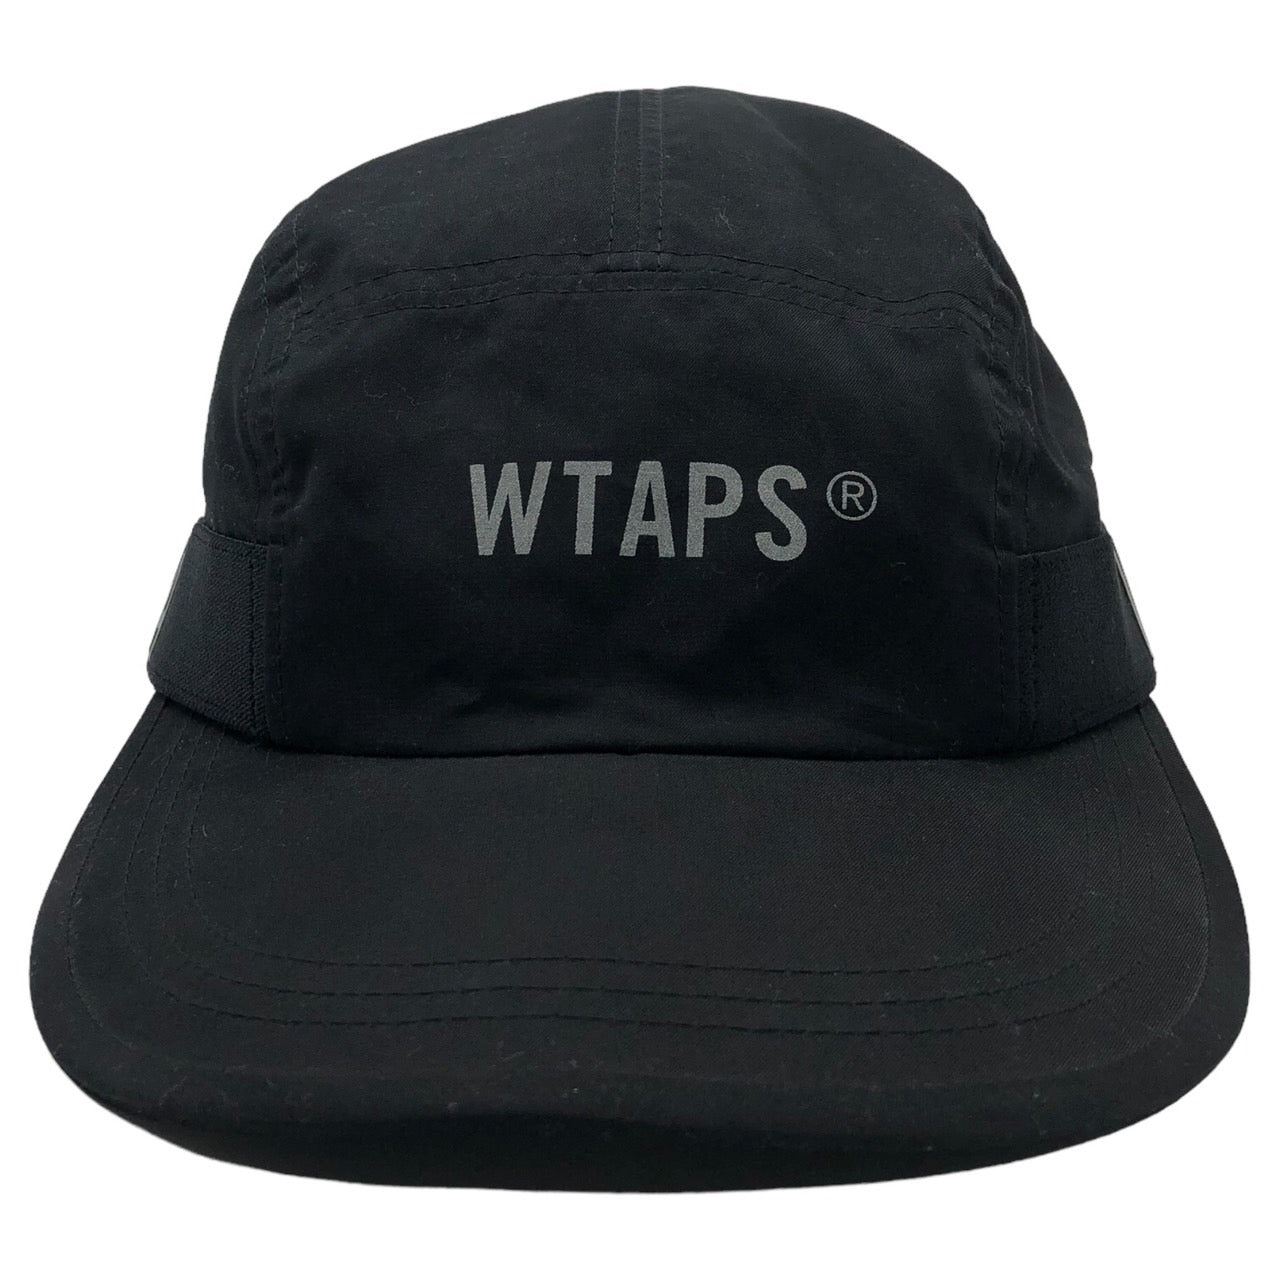 WTAPS(ダブルタップス) T-7. NYPO. TWILL ナイロン ロゴ キャップ 帽子 182HCDT-HT04 ブラック